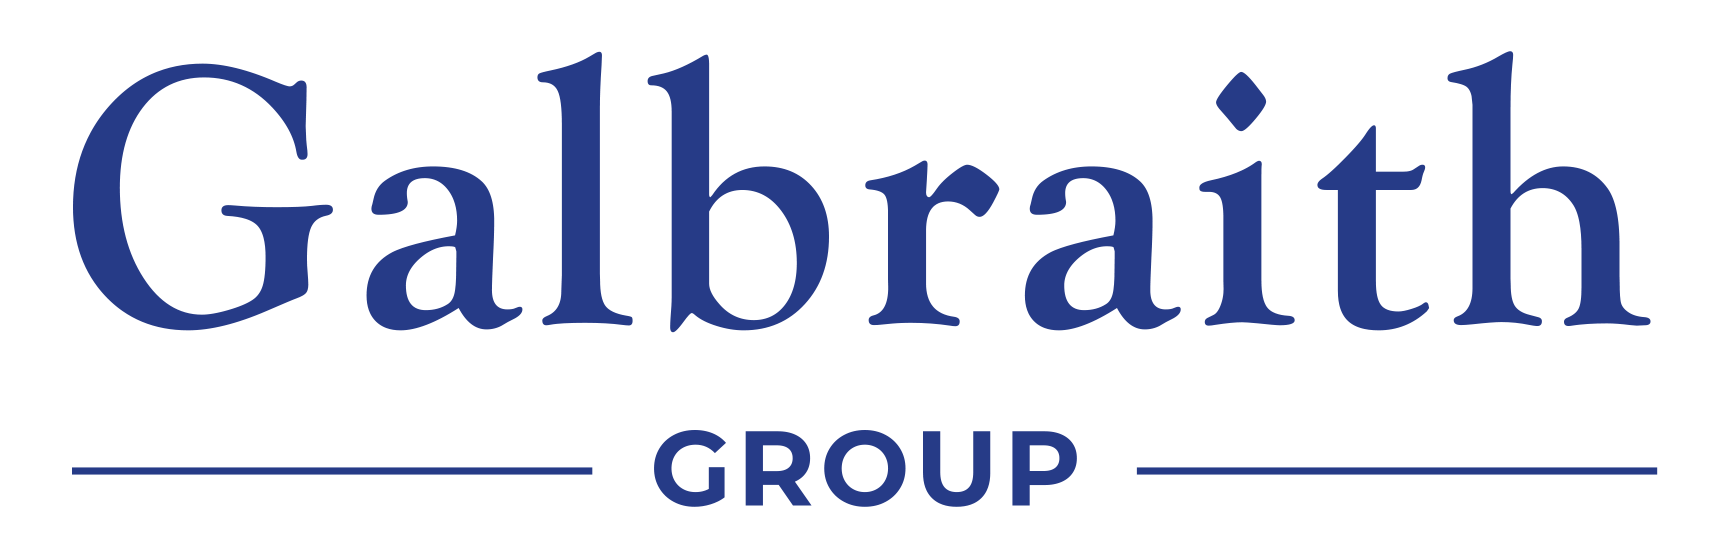 Galbraith Group